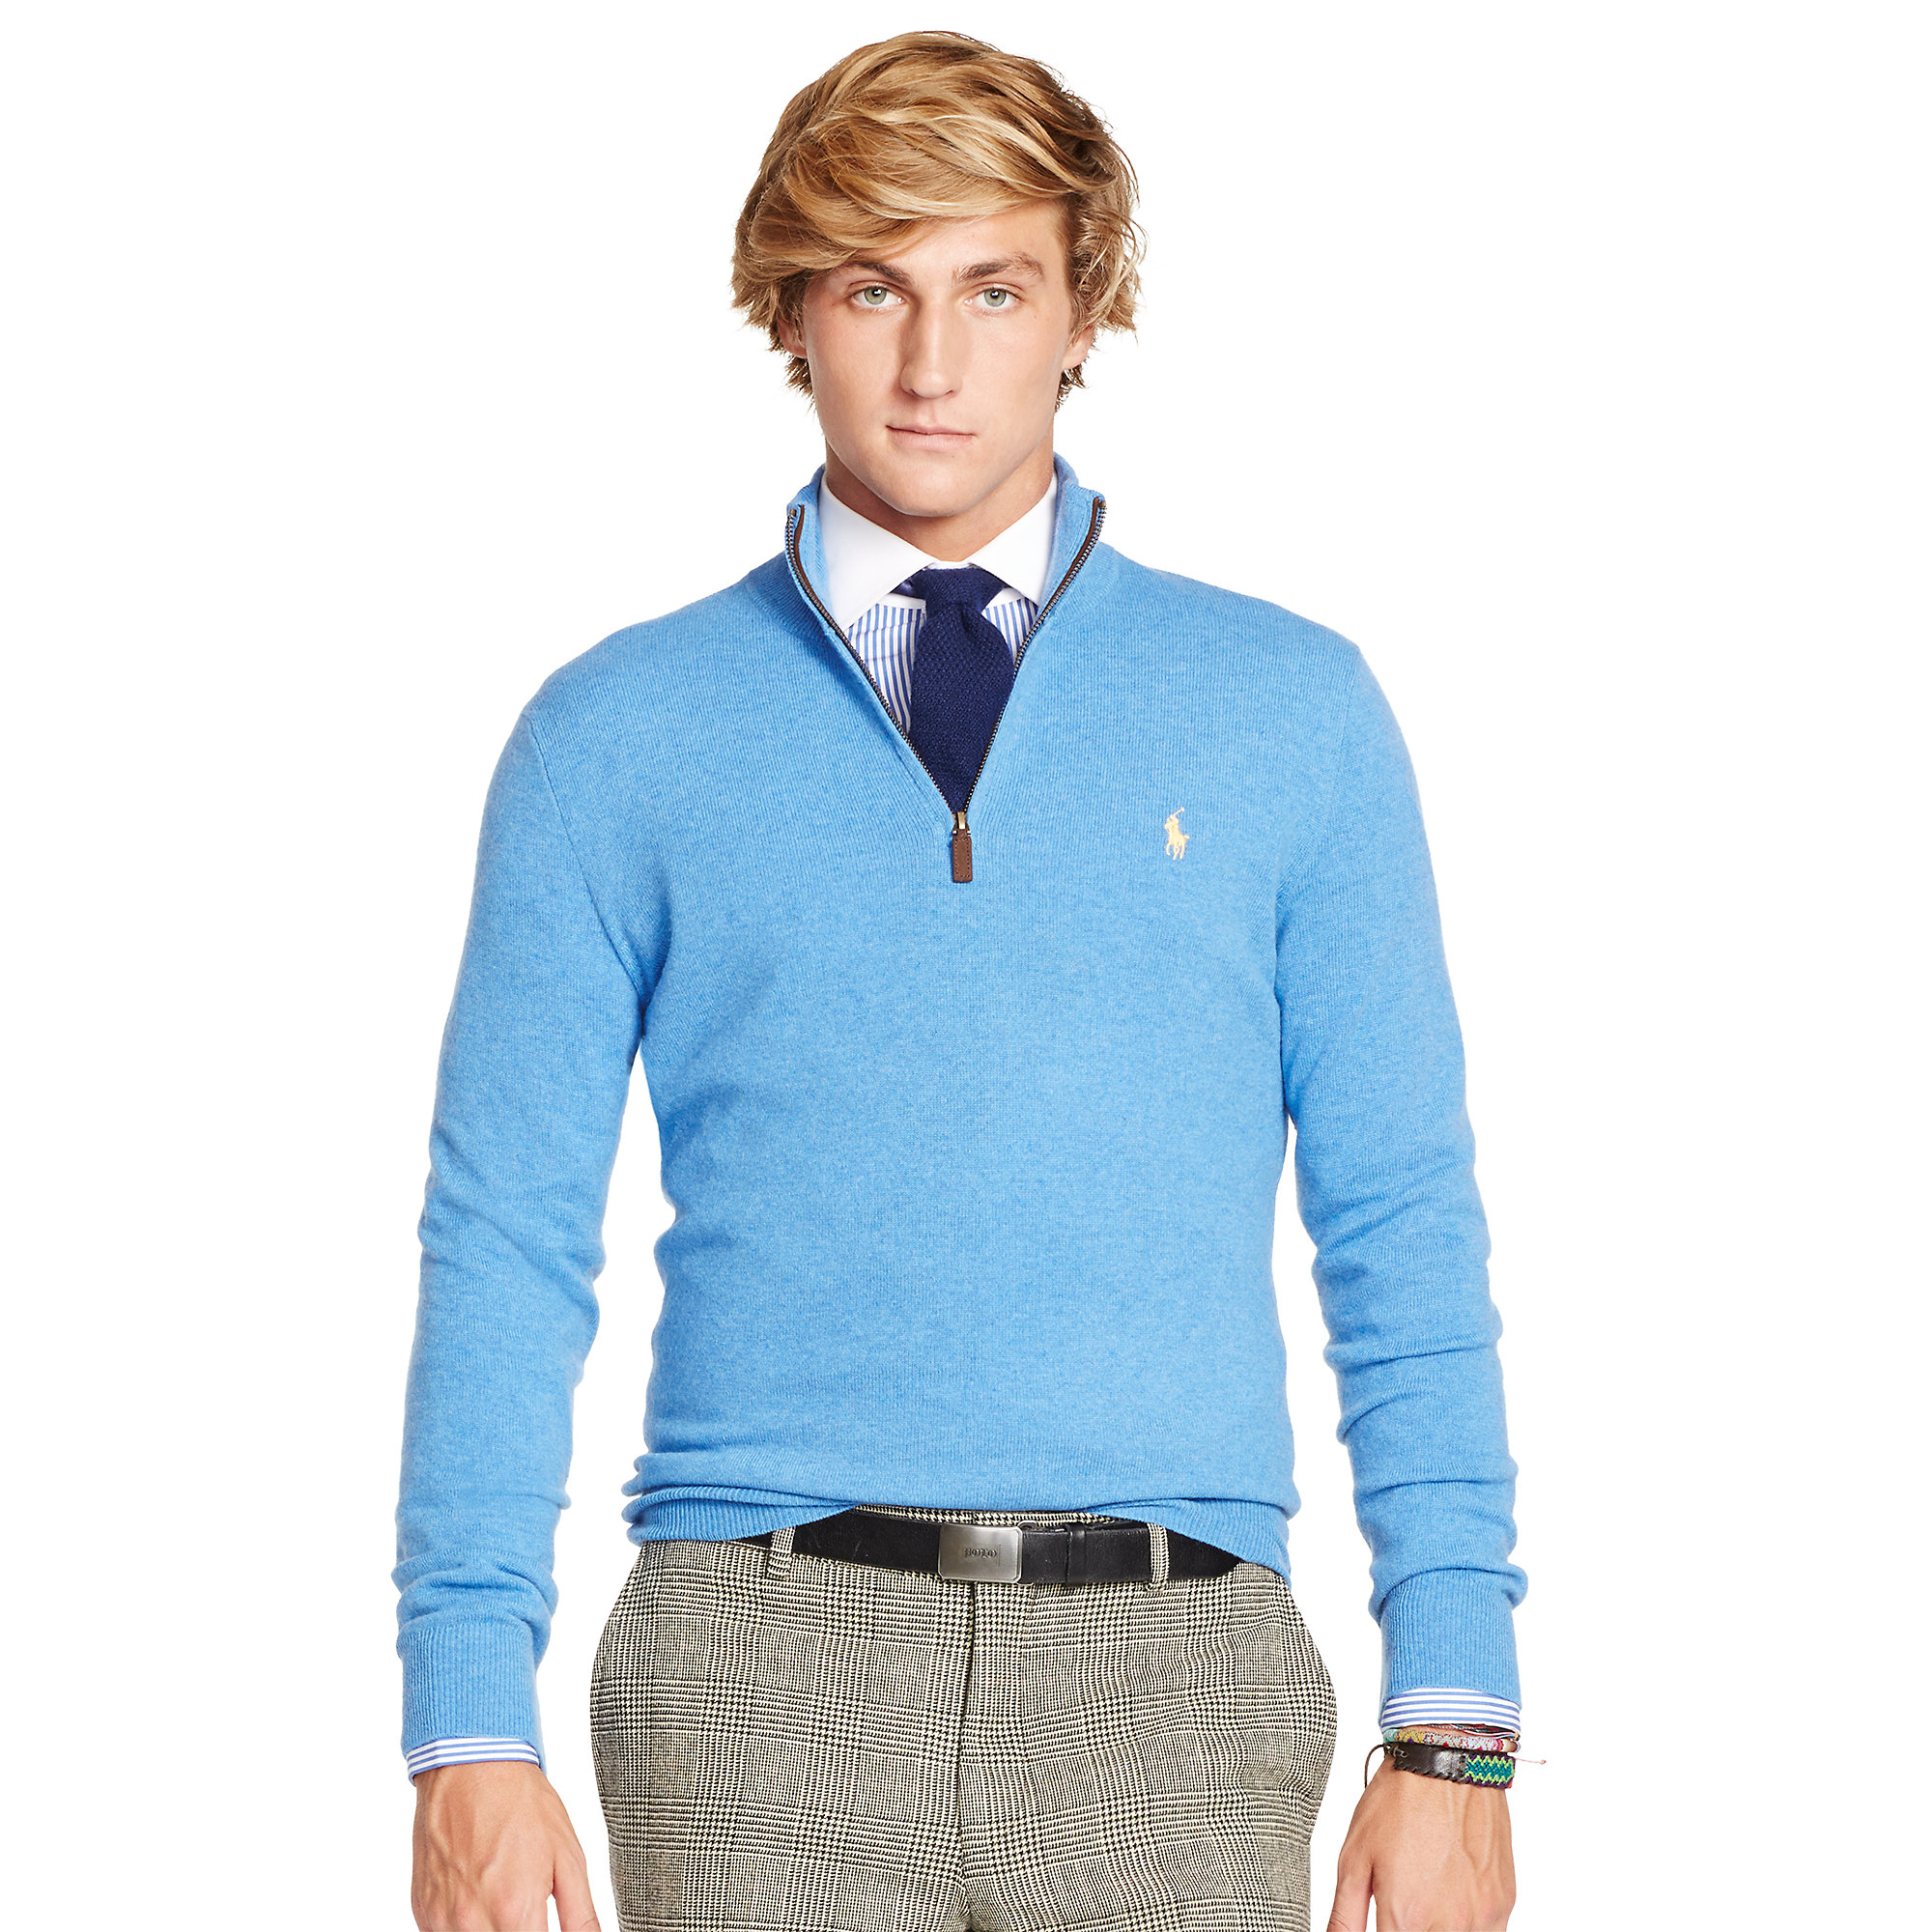 Lyst - Polo Ralph Lauren Merino Wool Half-Zip Sweater in Blue for Men